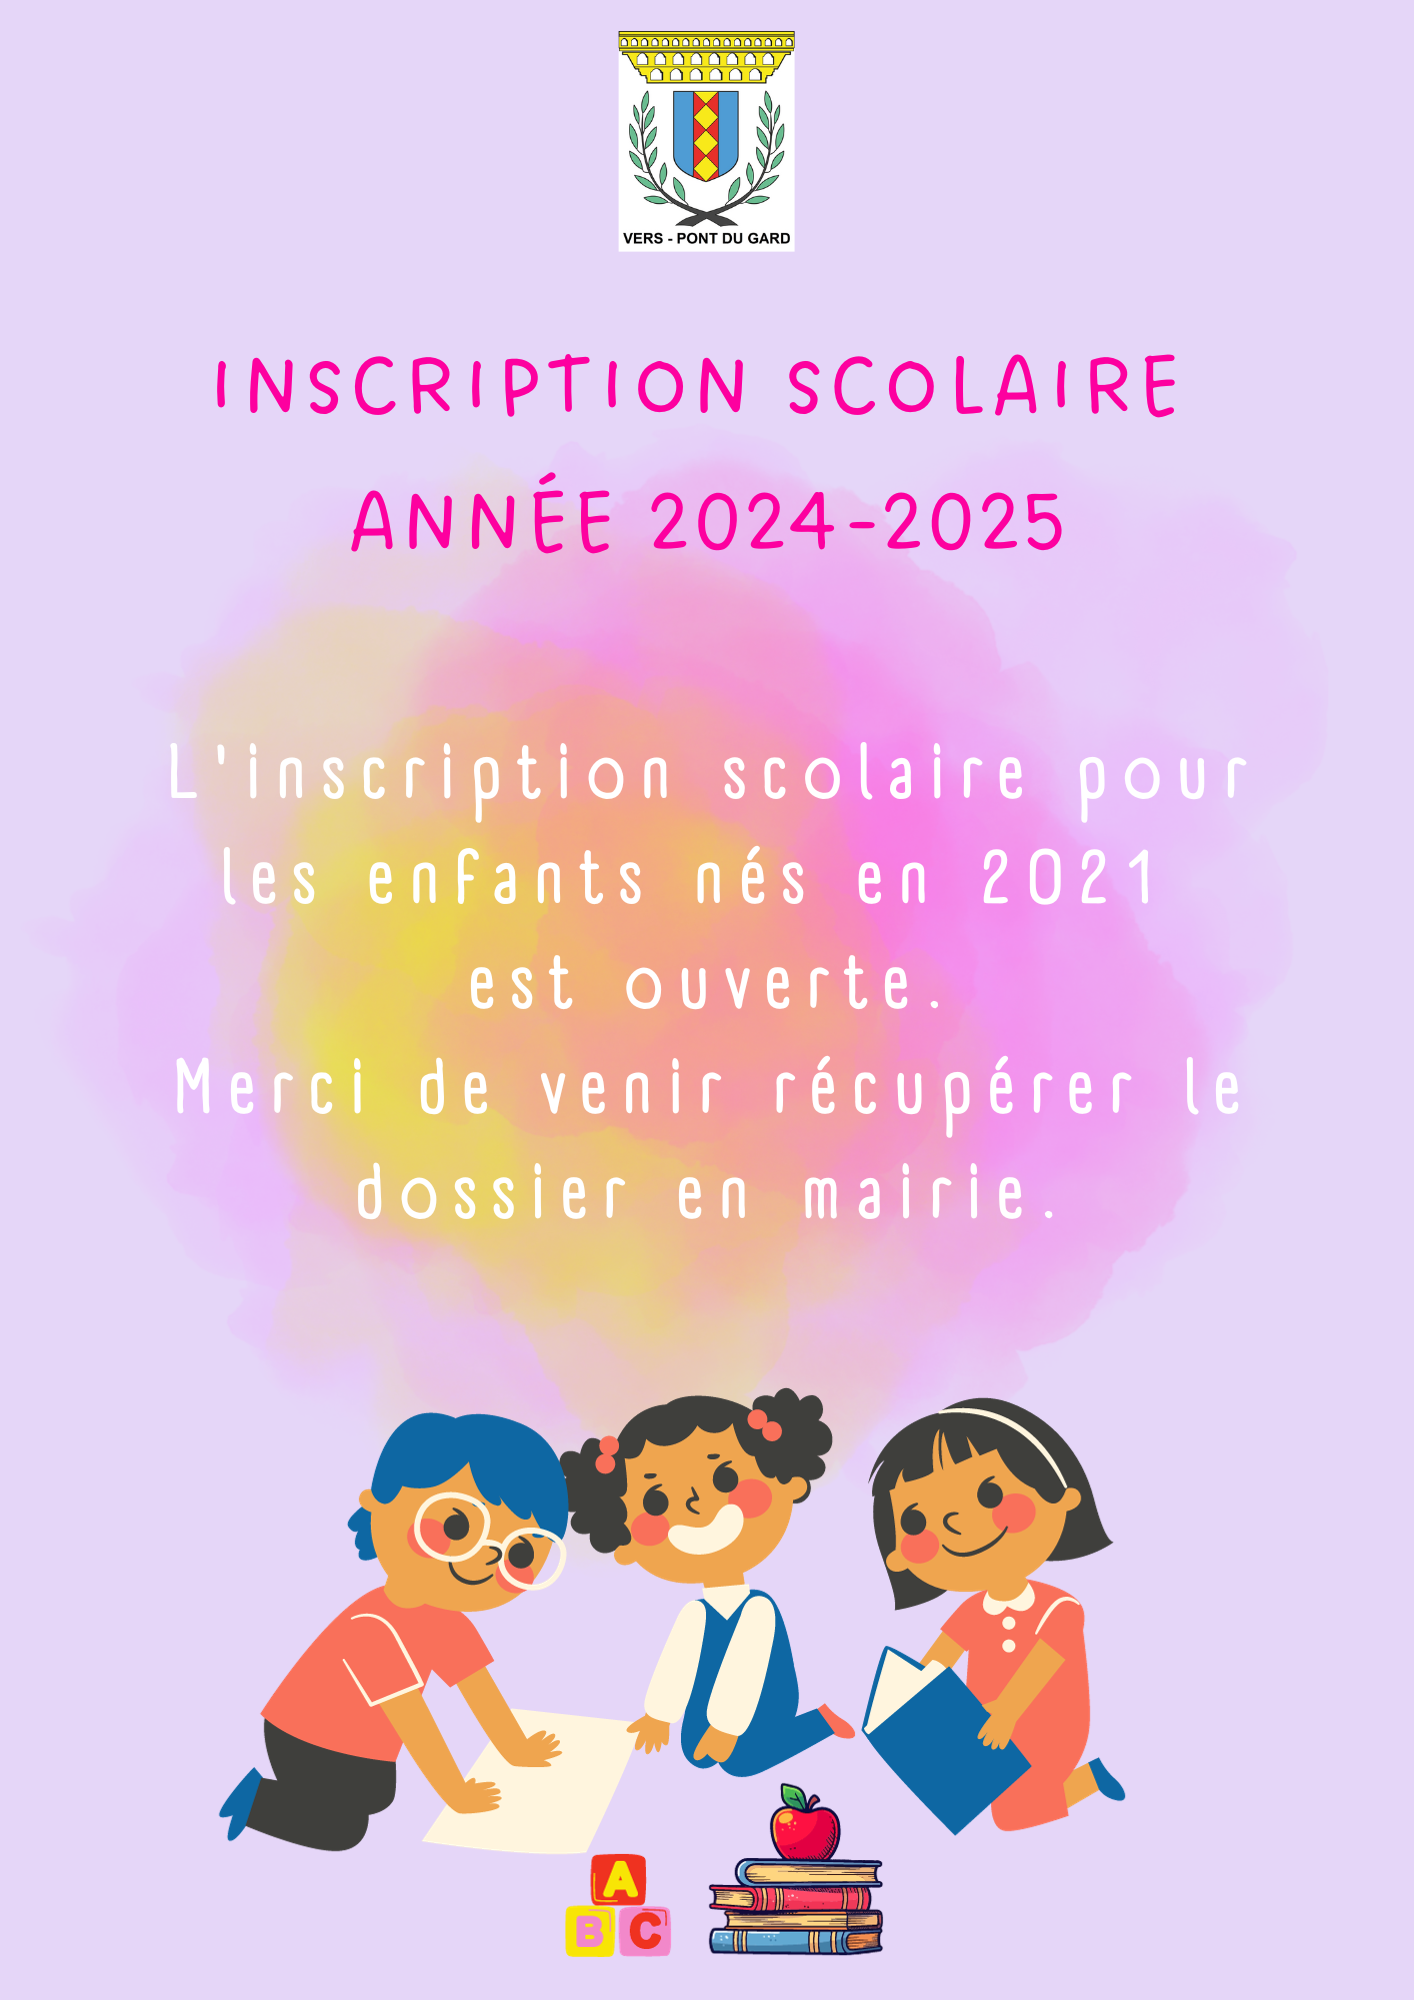 Inscription scolaire 2024-2025